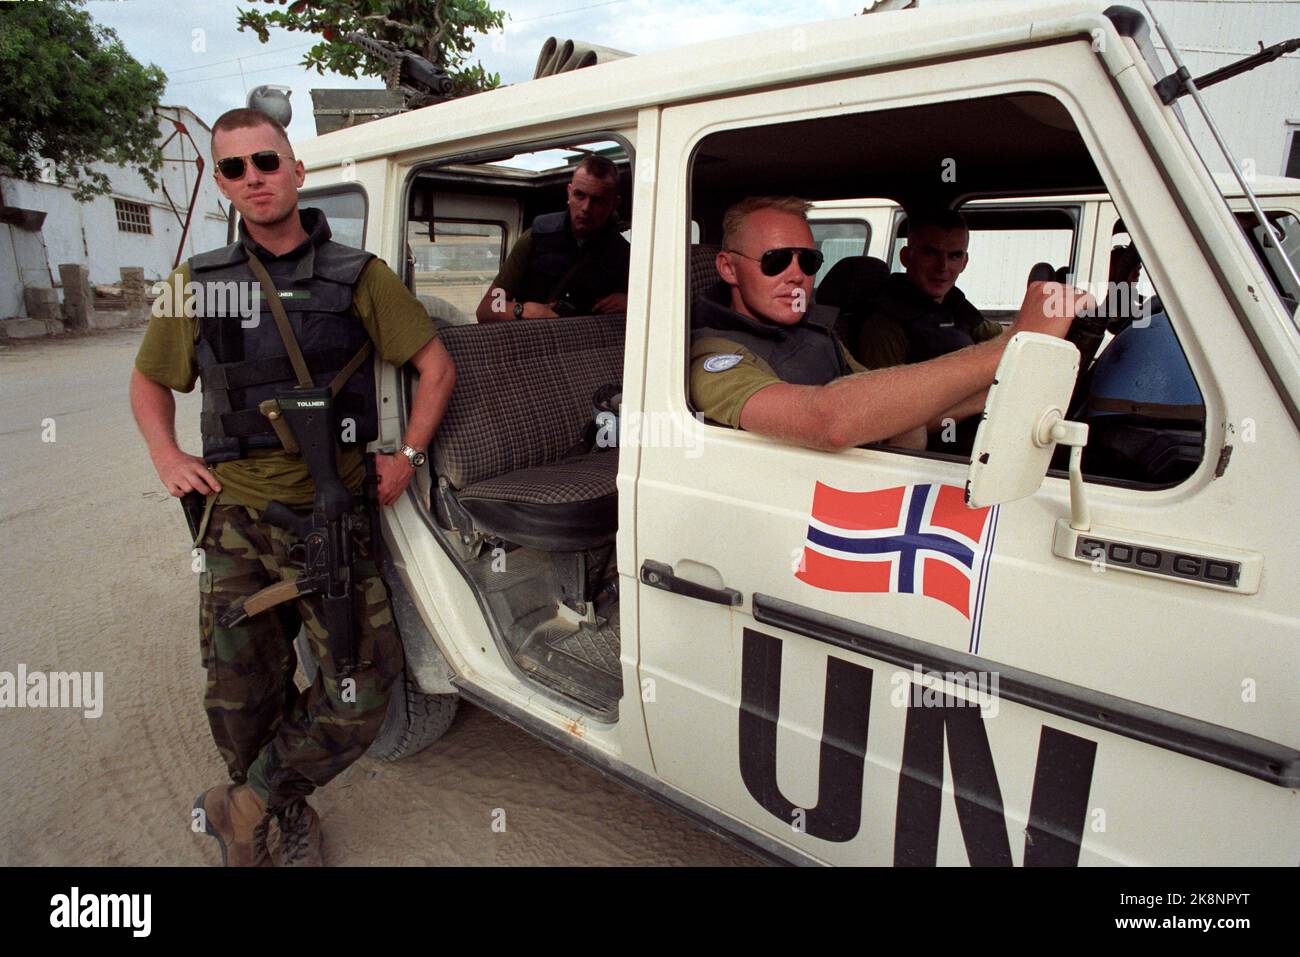 Mogadischu, Somalia 19931114: Norwegische UN-Soldaten in der Unisom-Truppe in Somalia. Das Bild: Der Korporal Ole Andre Renshusløkken (zurück im Auto) von Vinstra staff das Maschinengewehr in einem der norwegischen UN-Autos in Mogadischu, während der Korporal Fritz Tøllner aus Oslo die Beine zwischen den Aufträgen ausstreckt. Erstens werden die norwegischen UN-Soldaten drei gepanzerte Personnel-Fahrzeuge einsetzen können, was die Sicherheit erheblich verbessern wird. Foto: Nils-Inge Kruhaug / NTB / NTB Stockfoto